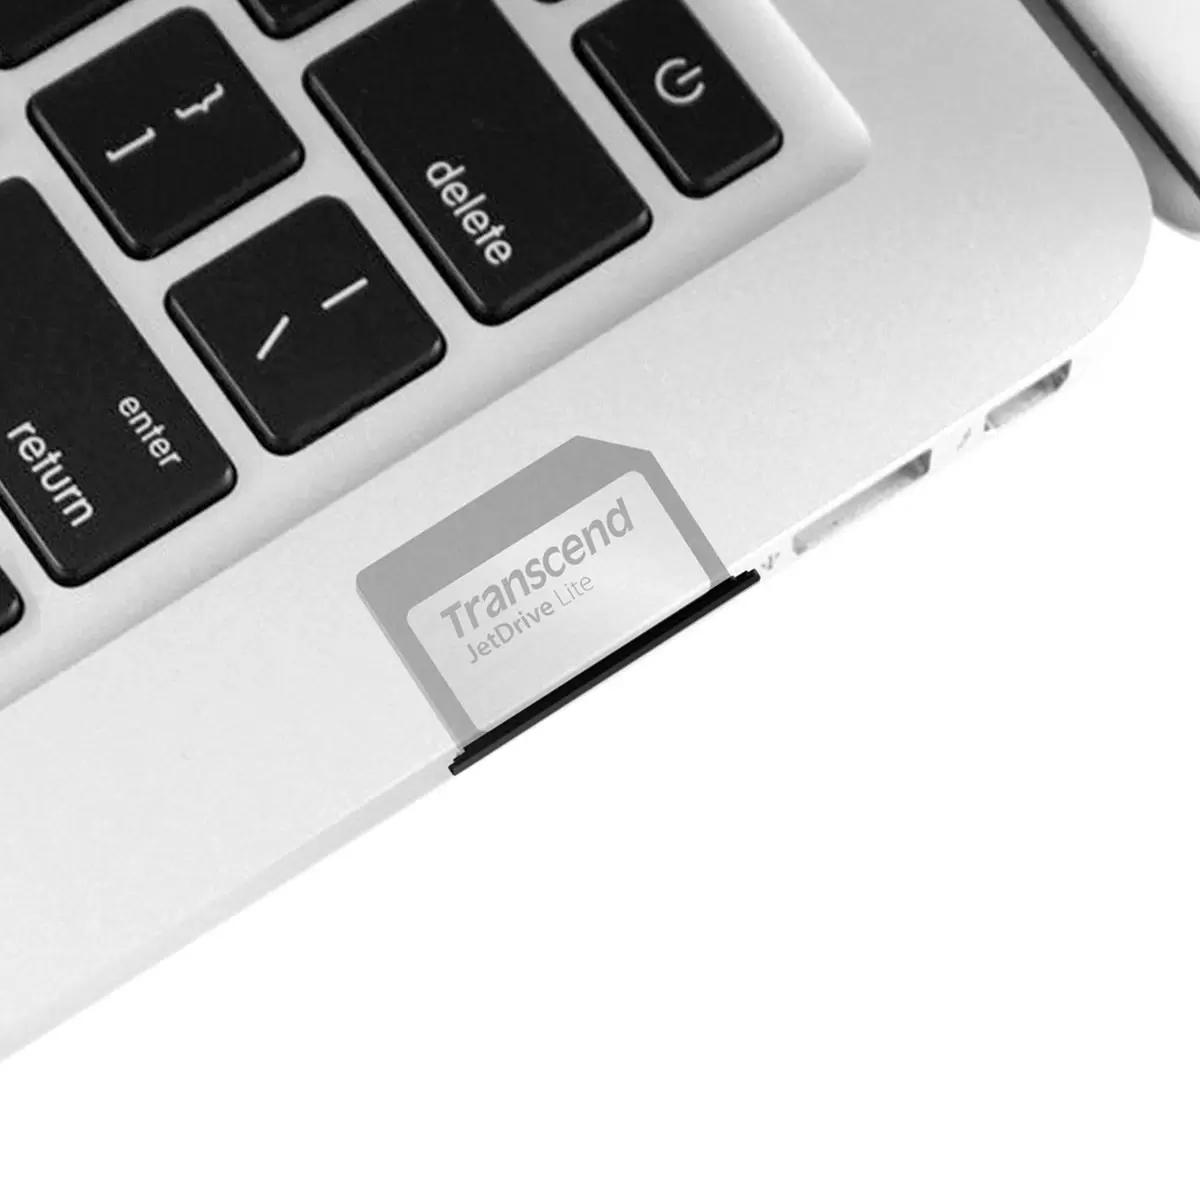 創見 JetDrive Lite 330 Macbook Pro 專用擴充卡 1TB